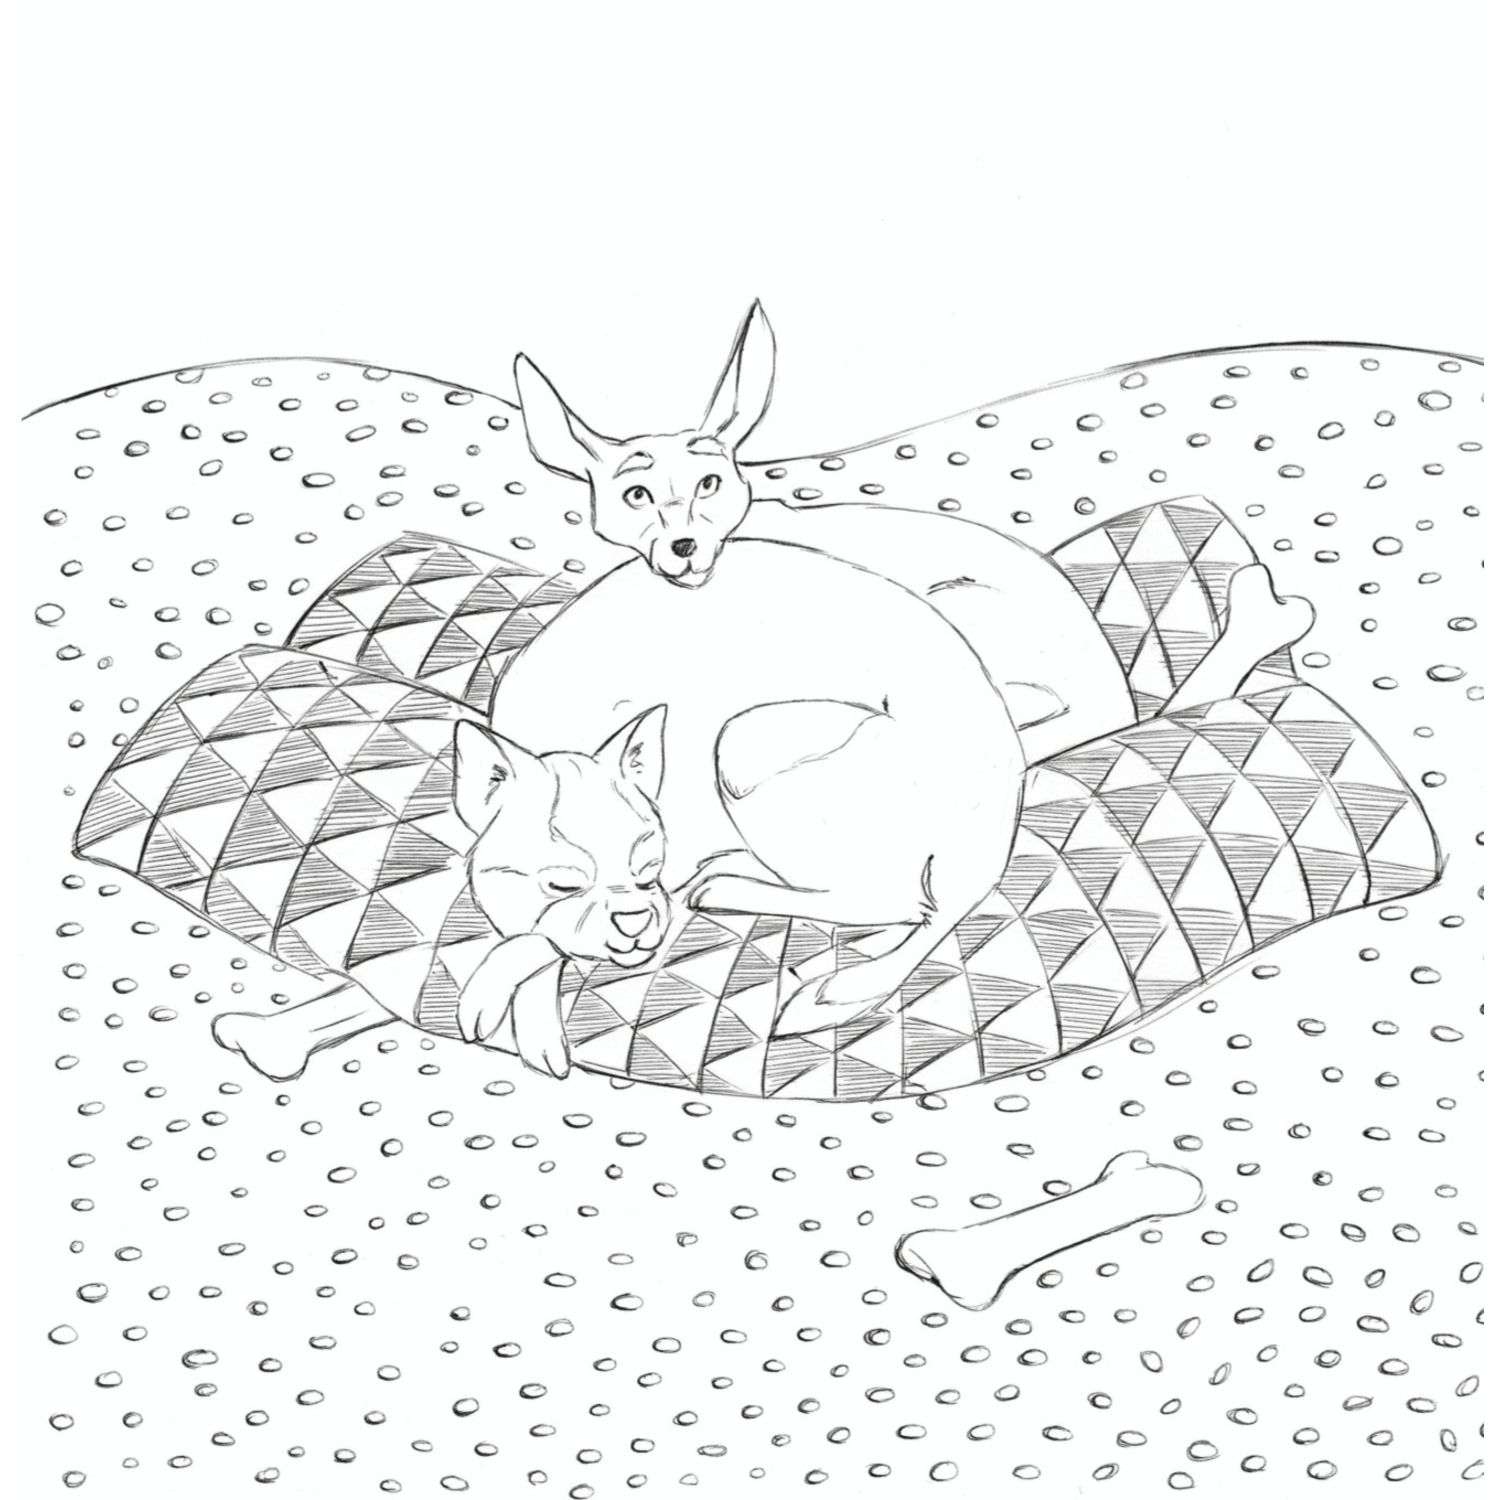 Раскраска Мои очаровательные пушистые друзья Раскрашиваем 100 иллюстраций самых милых животных - фото 6